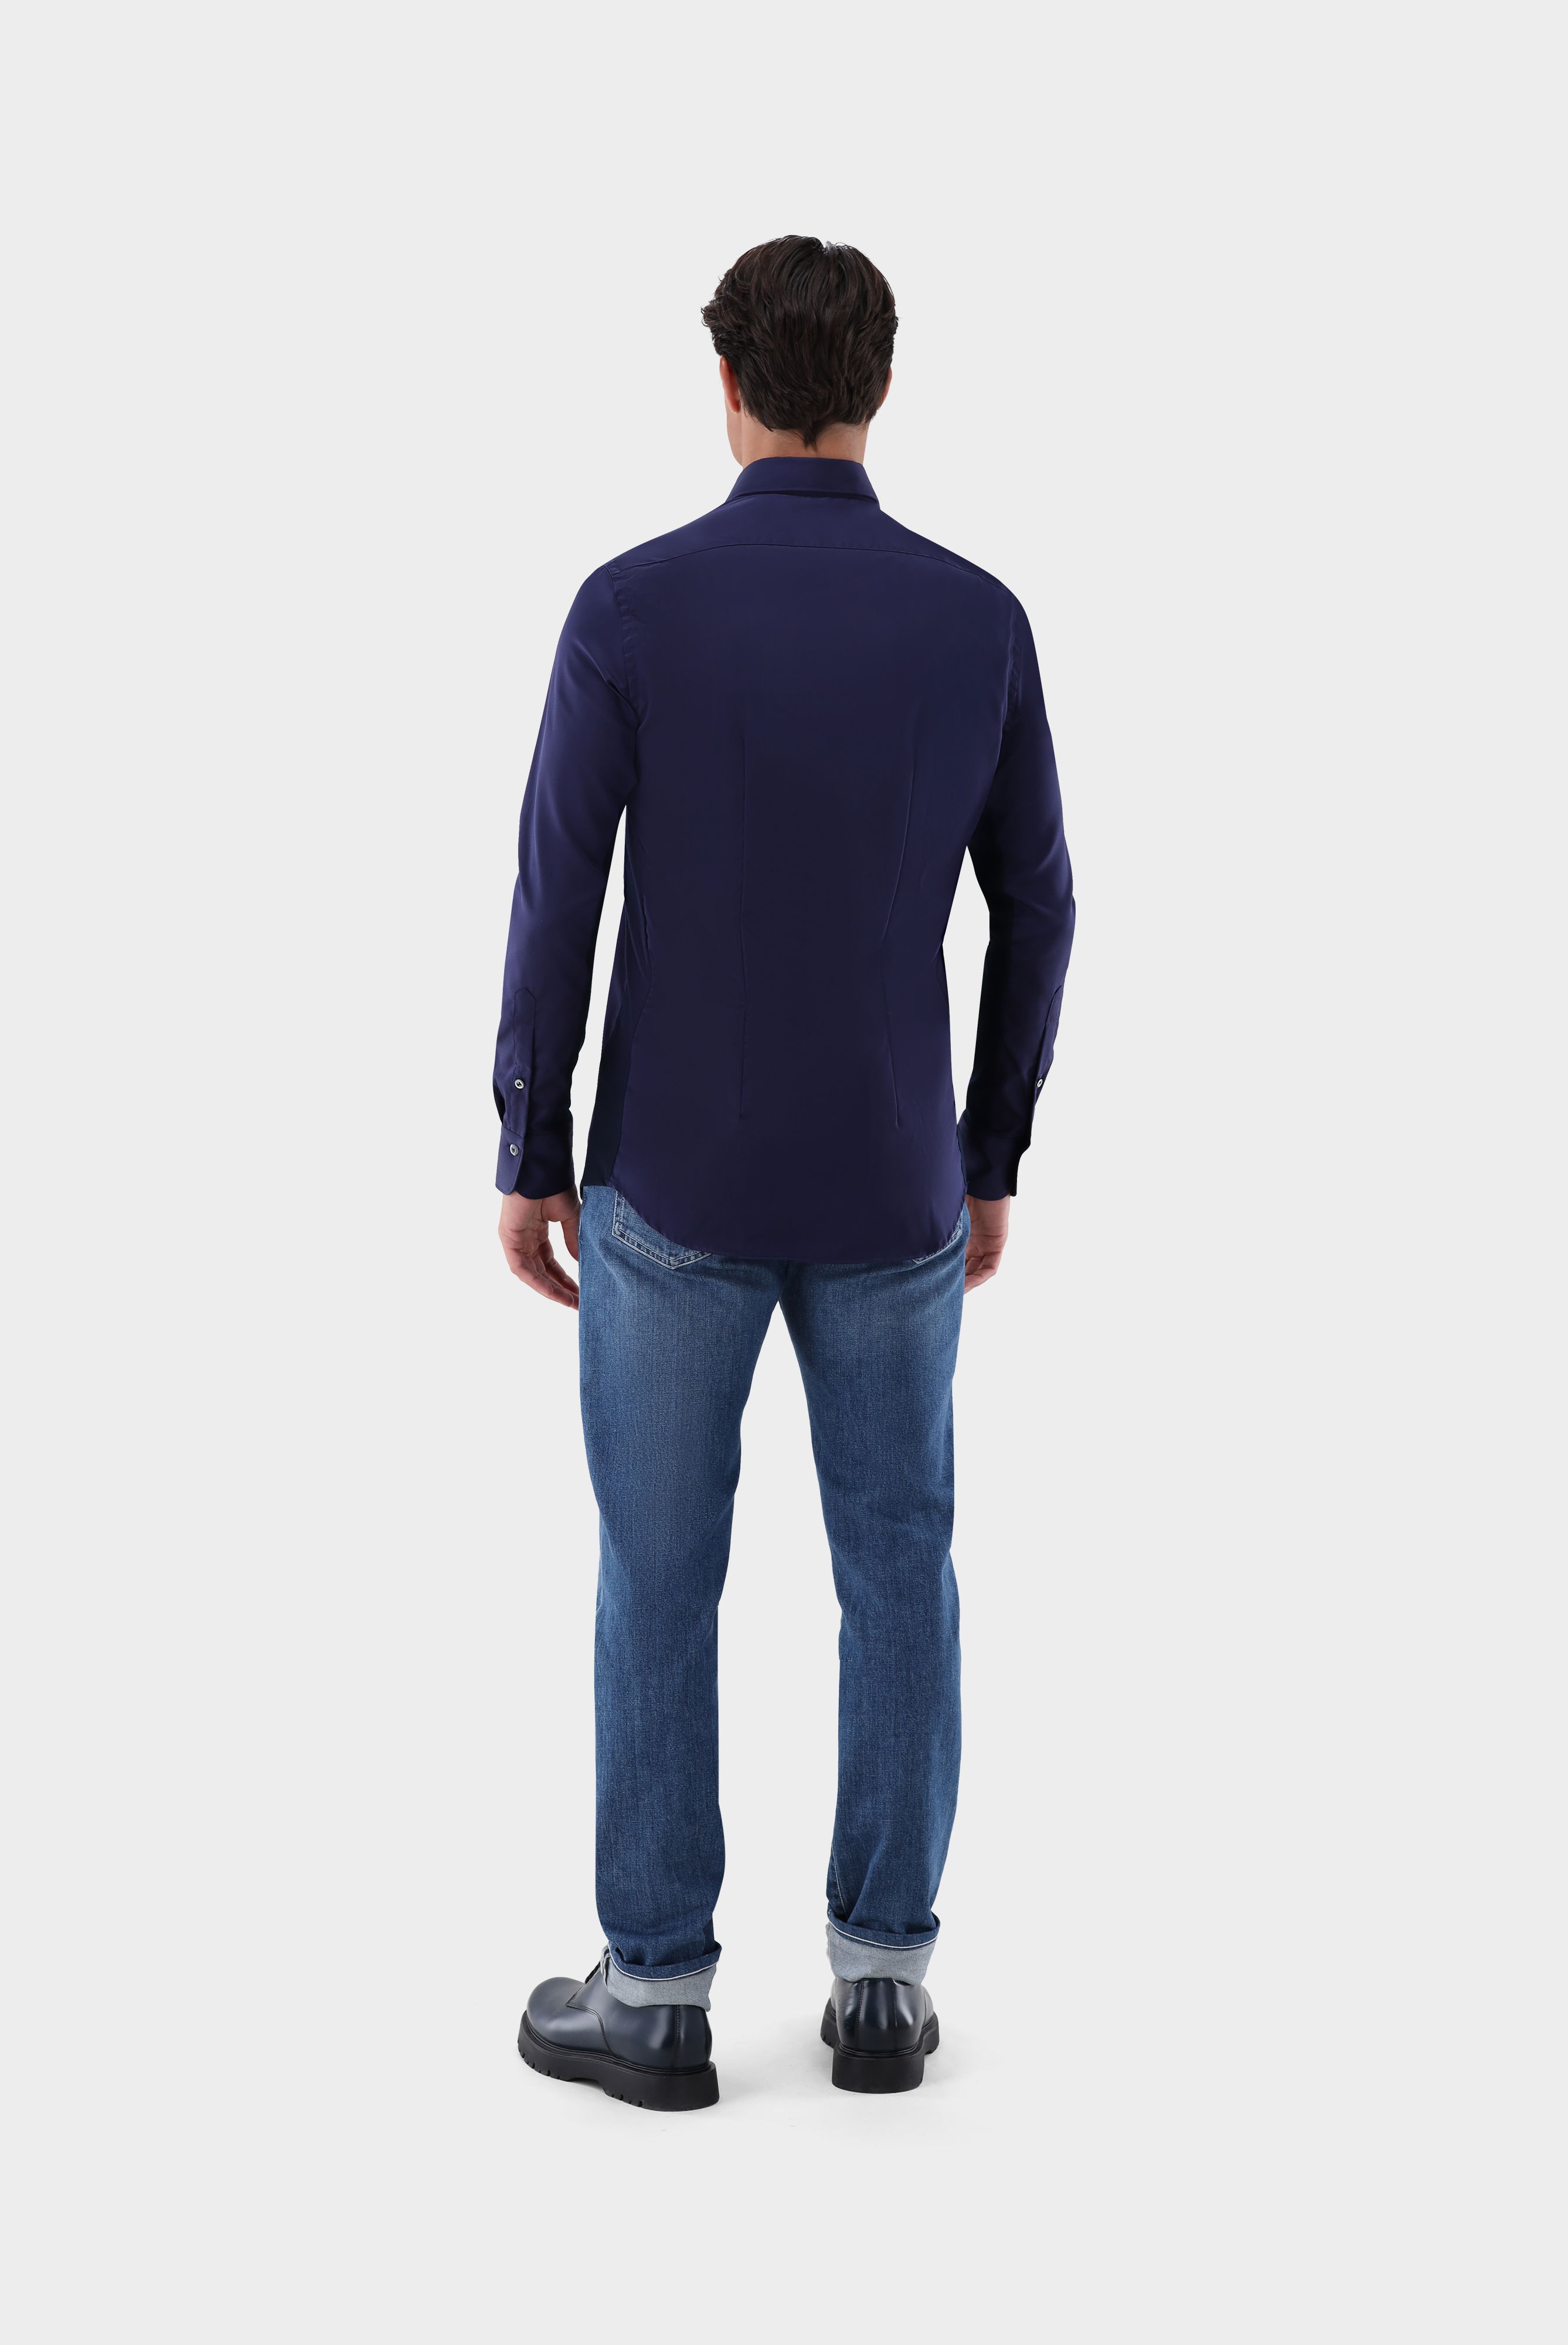 Bügelleichte Hemden+Bügelfreies Hybridshirt mit Jerseyeinsatz Slim Fit+20.2553.0F.132241.790.45